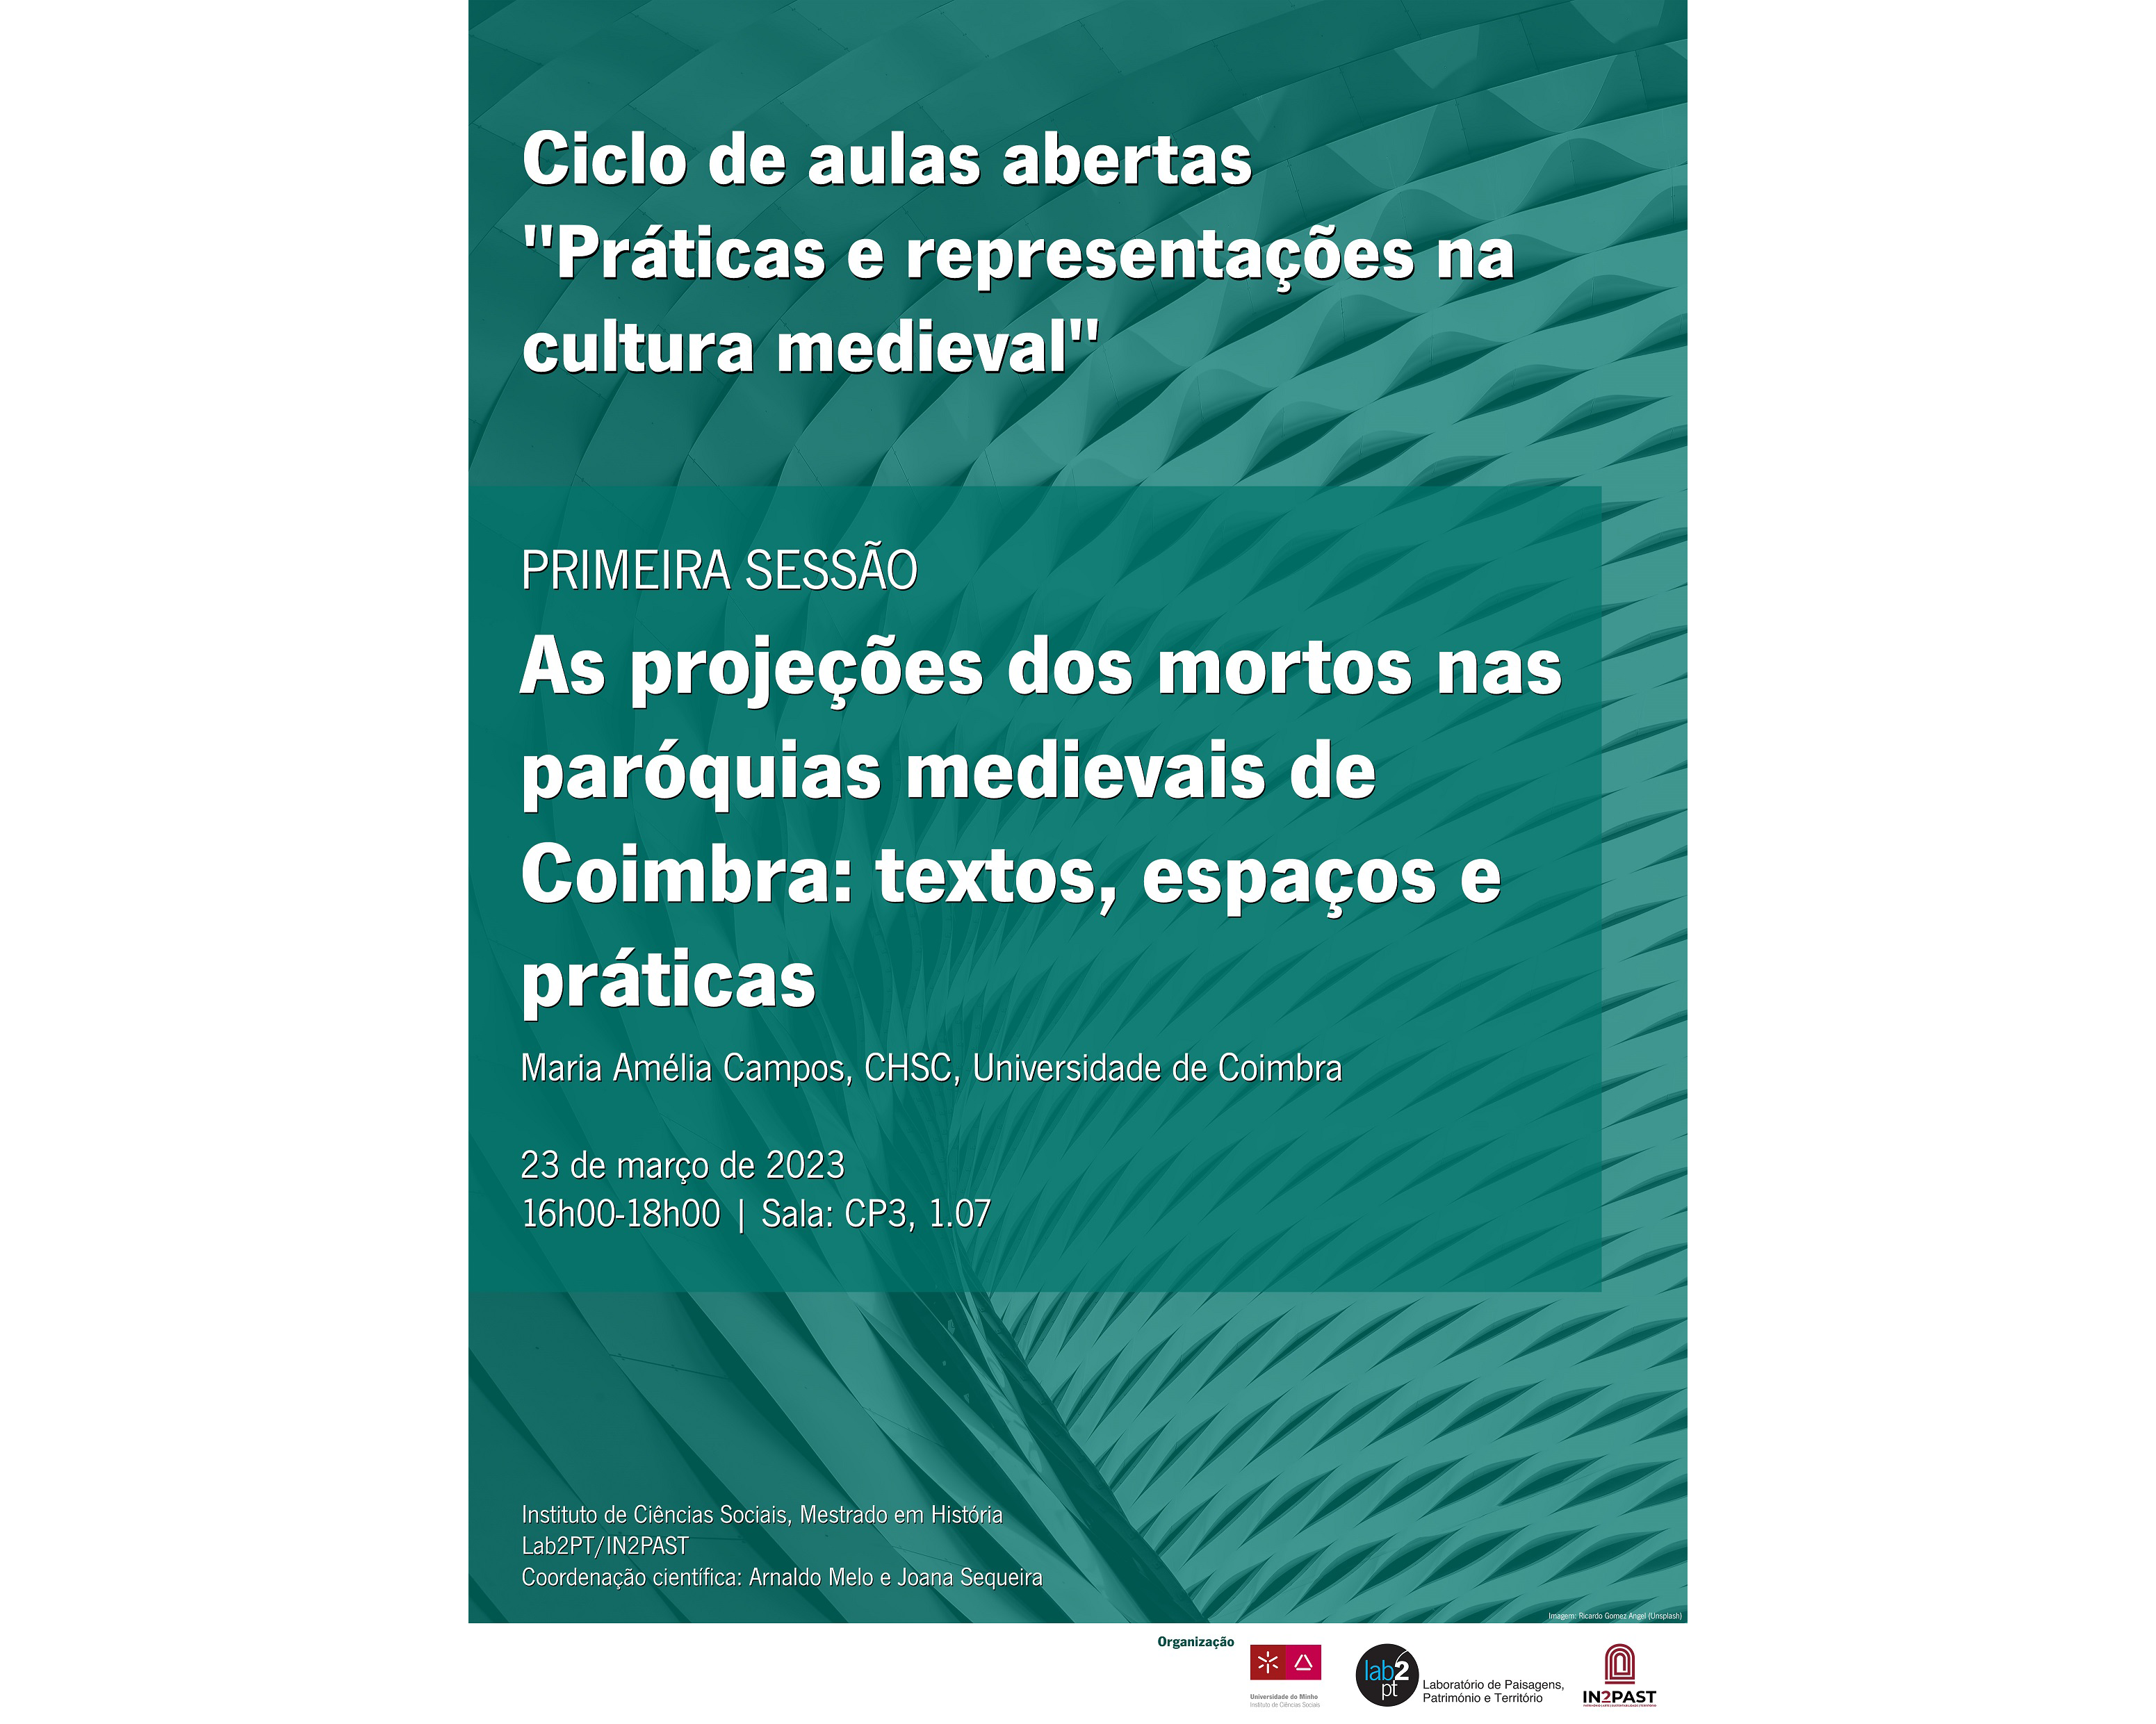 Ciclo de aulas abertas "Práticas e representações na cultura medieval" image